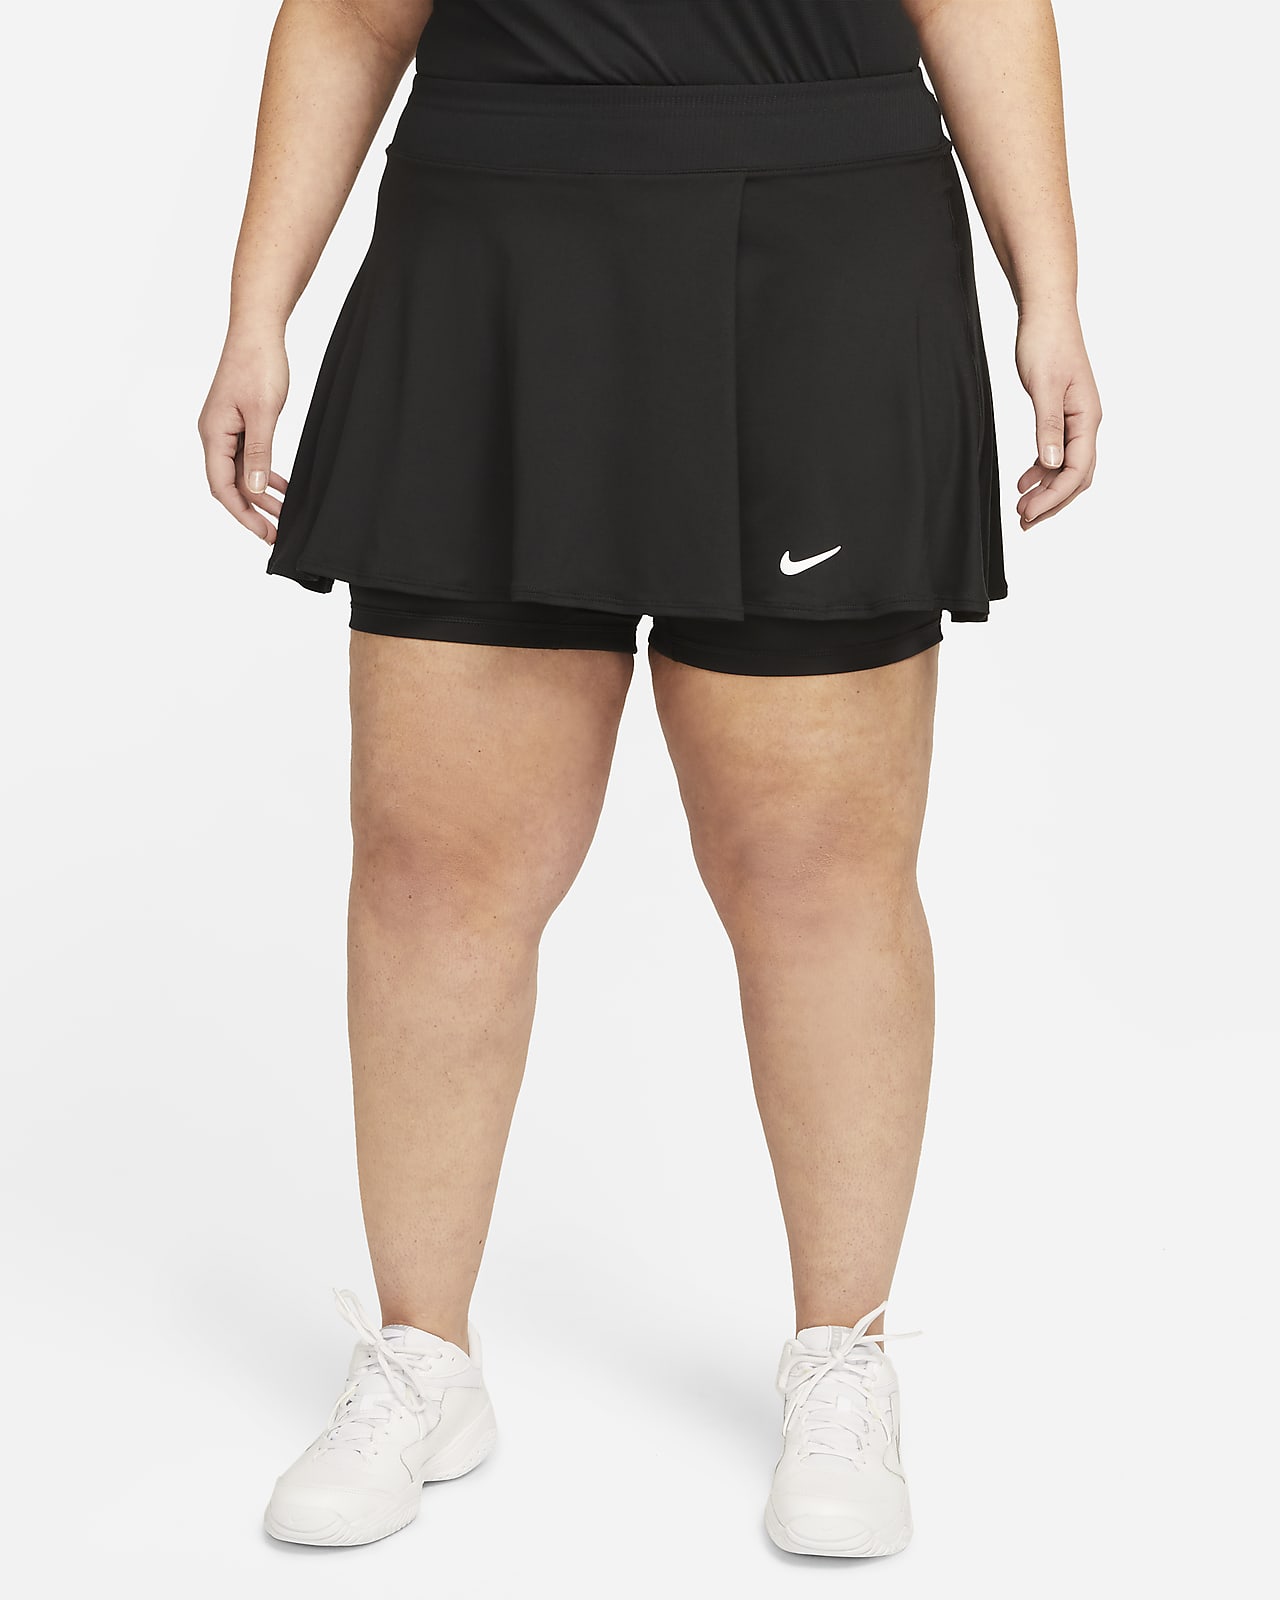 Damska spódniczka tenisowa z falbanami NikeCourt Dri-FIT Victory (duże rozmiary)